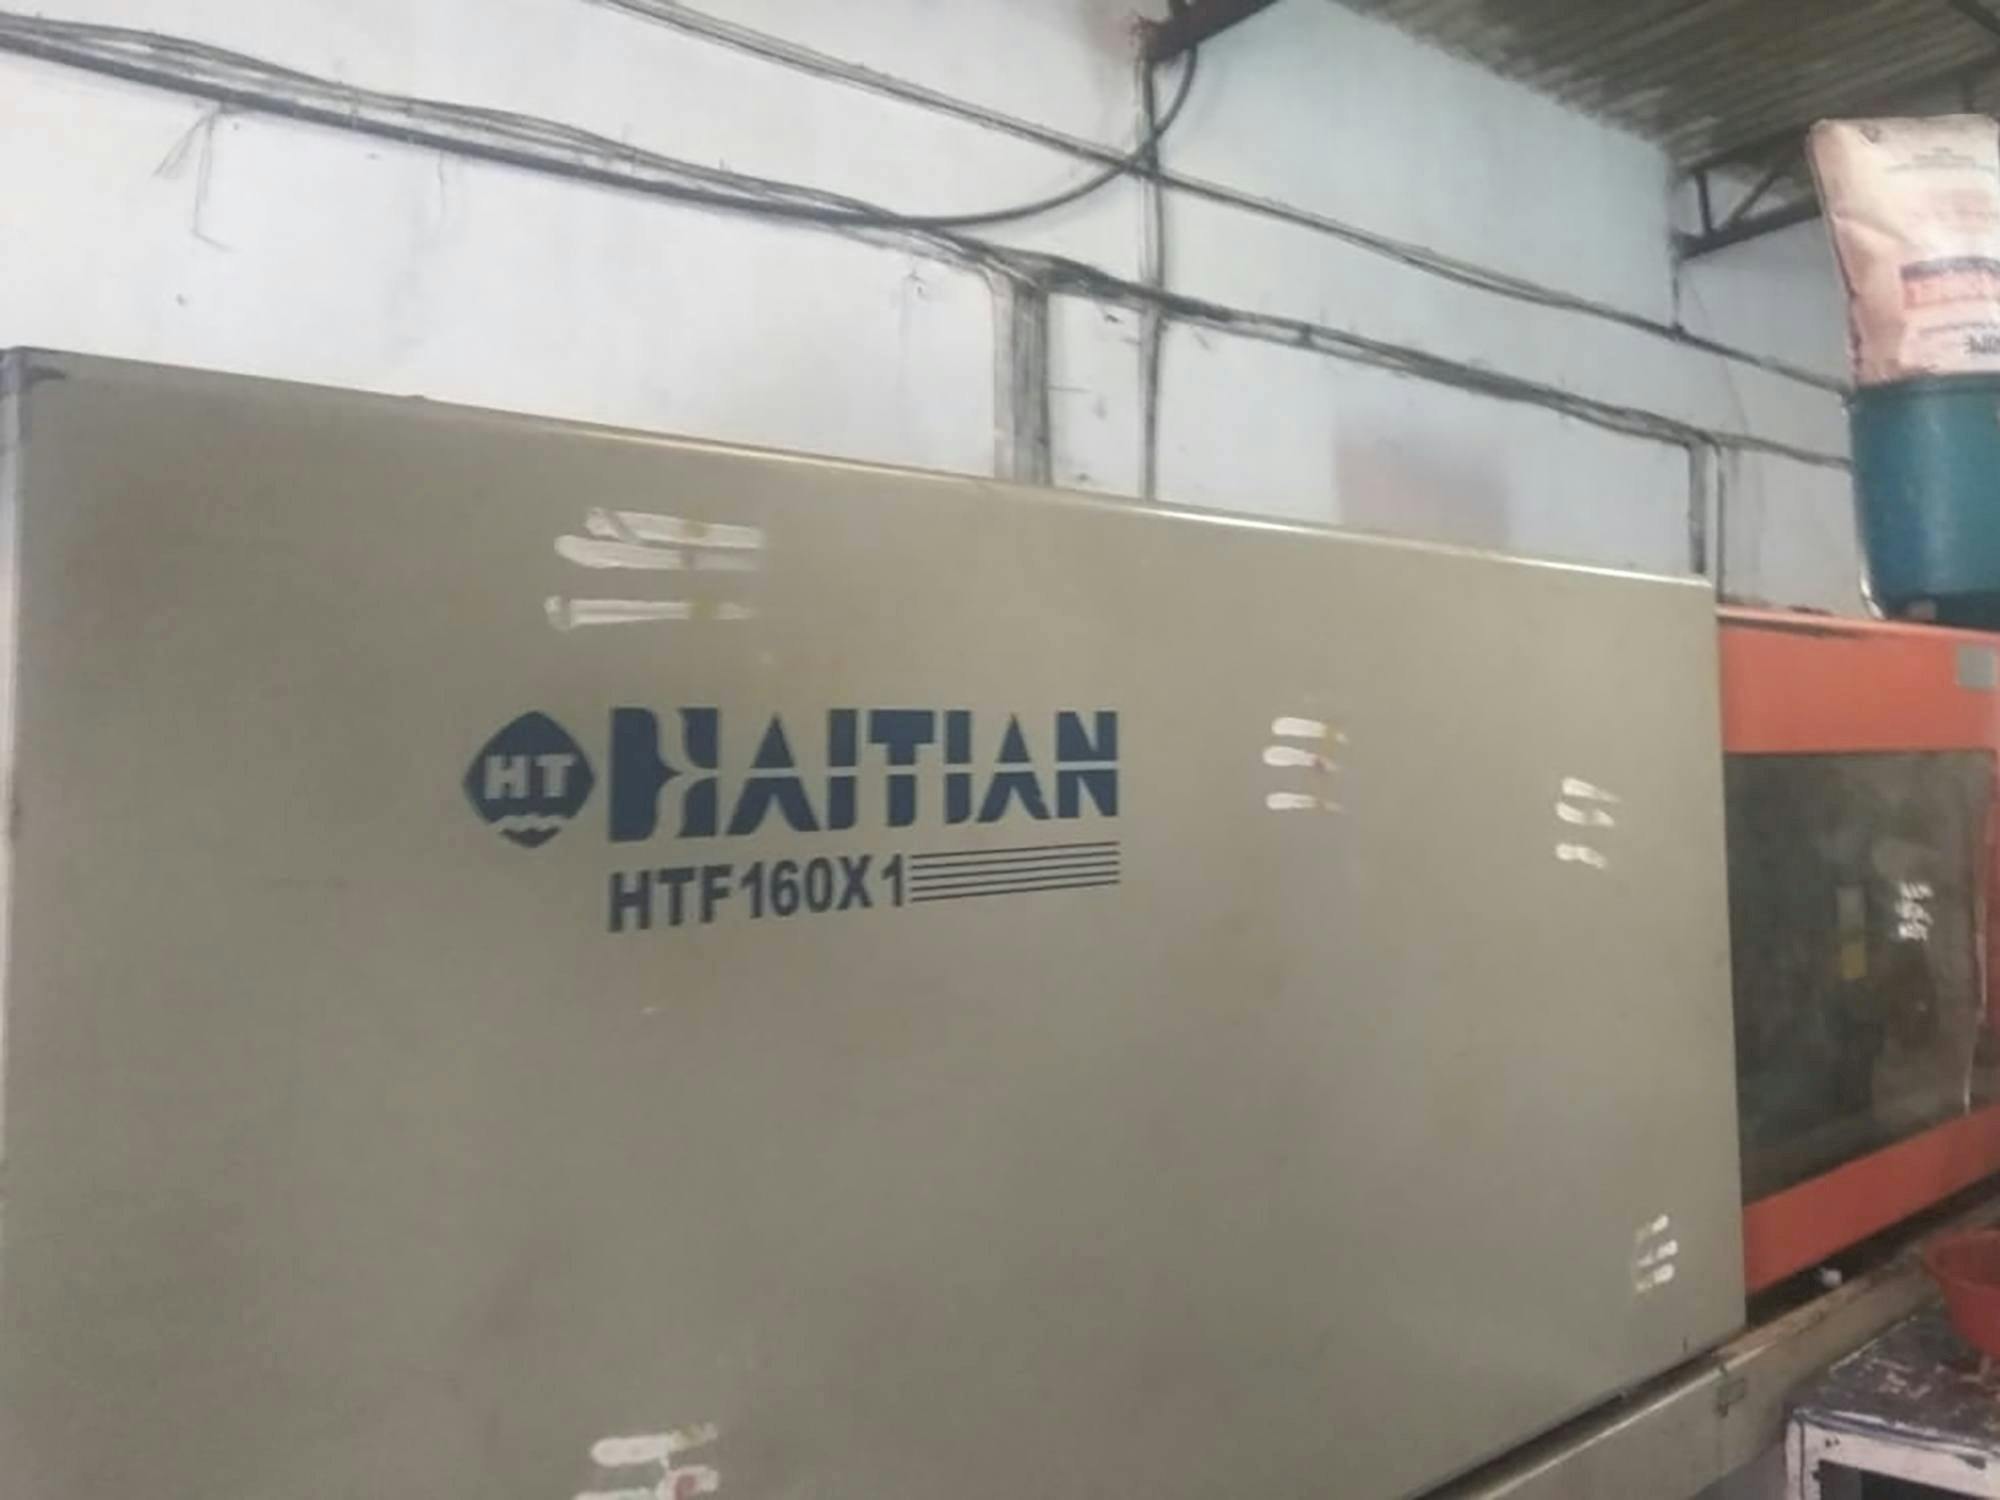 HAITIAN Mašinos vaizdasHTF160X1 iš priekio